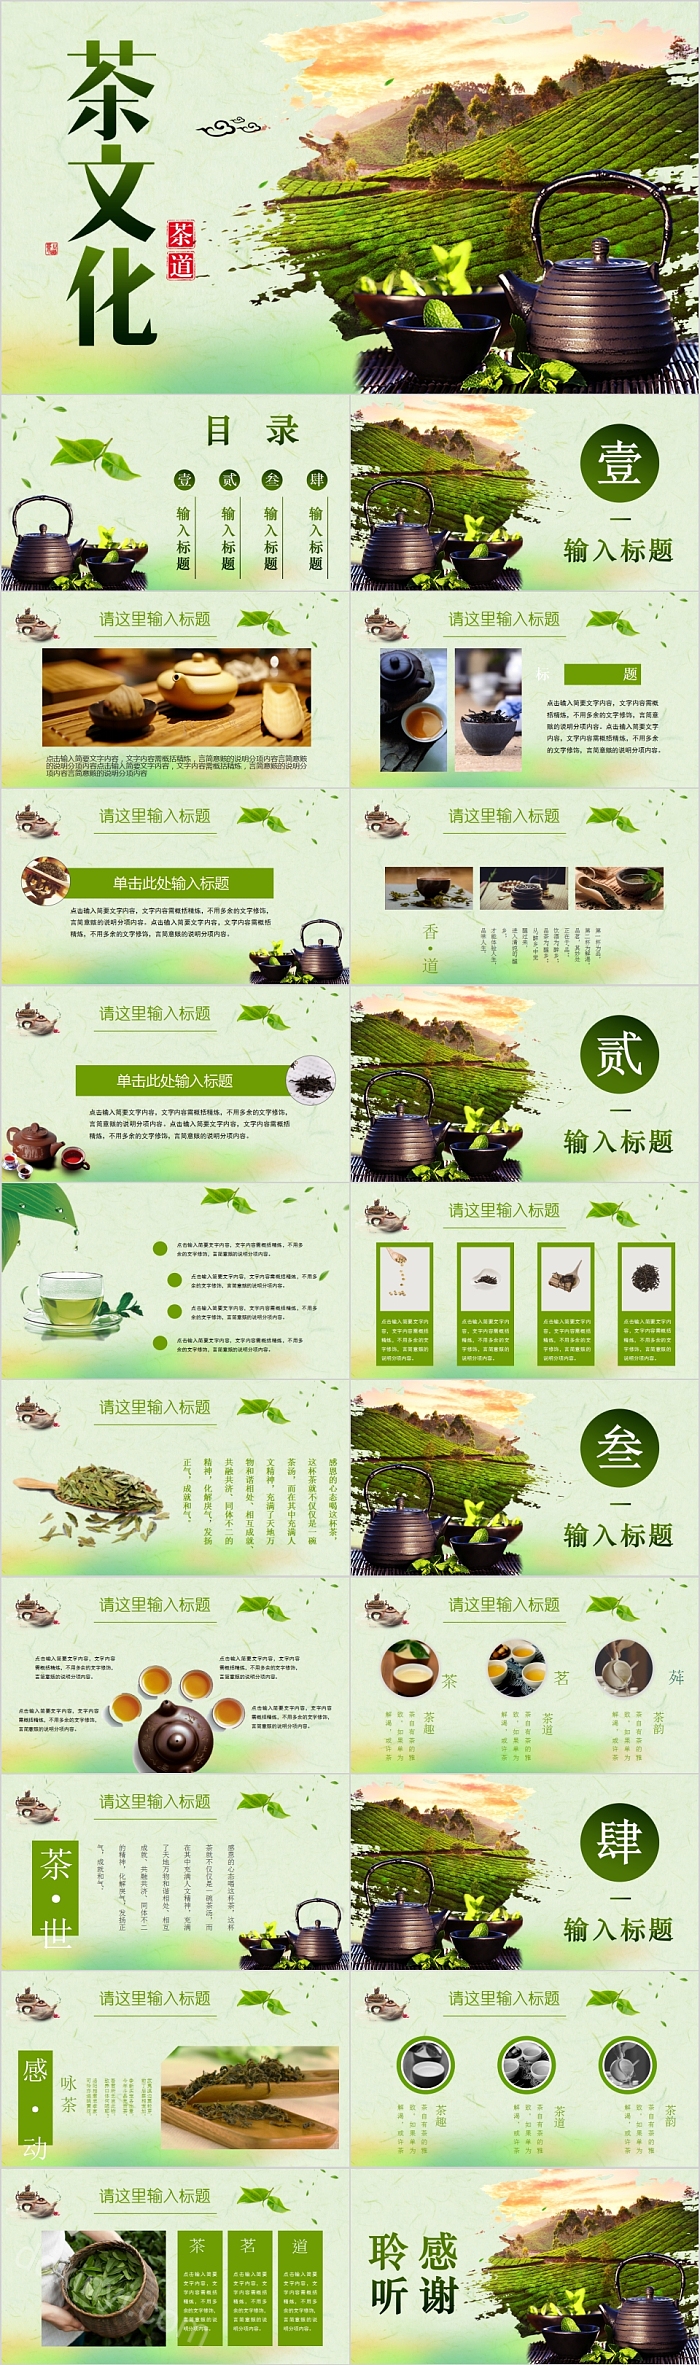 中国风茶文化茶道PPT模板